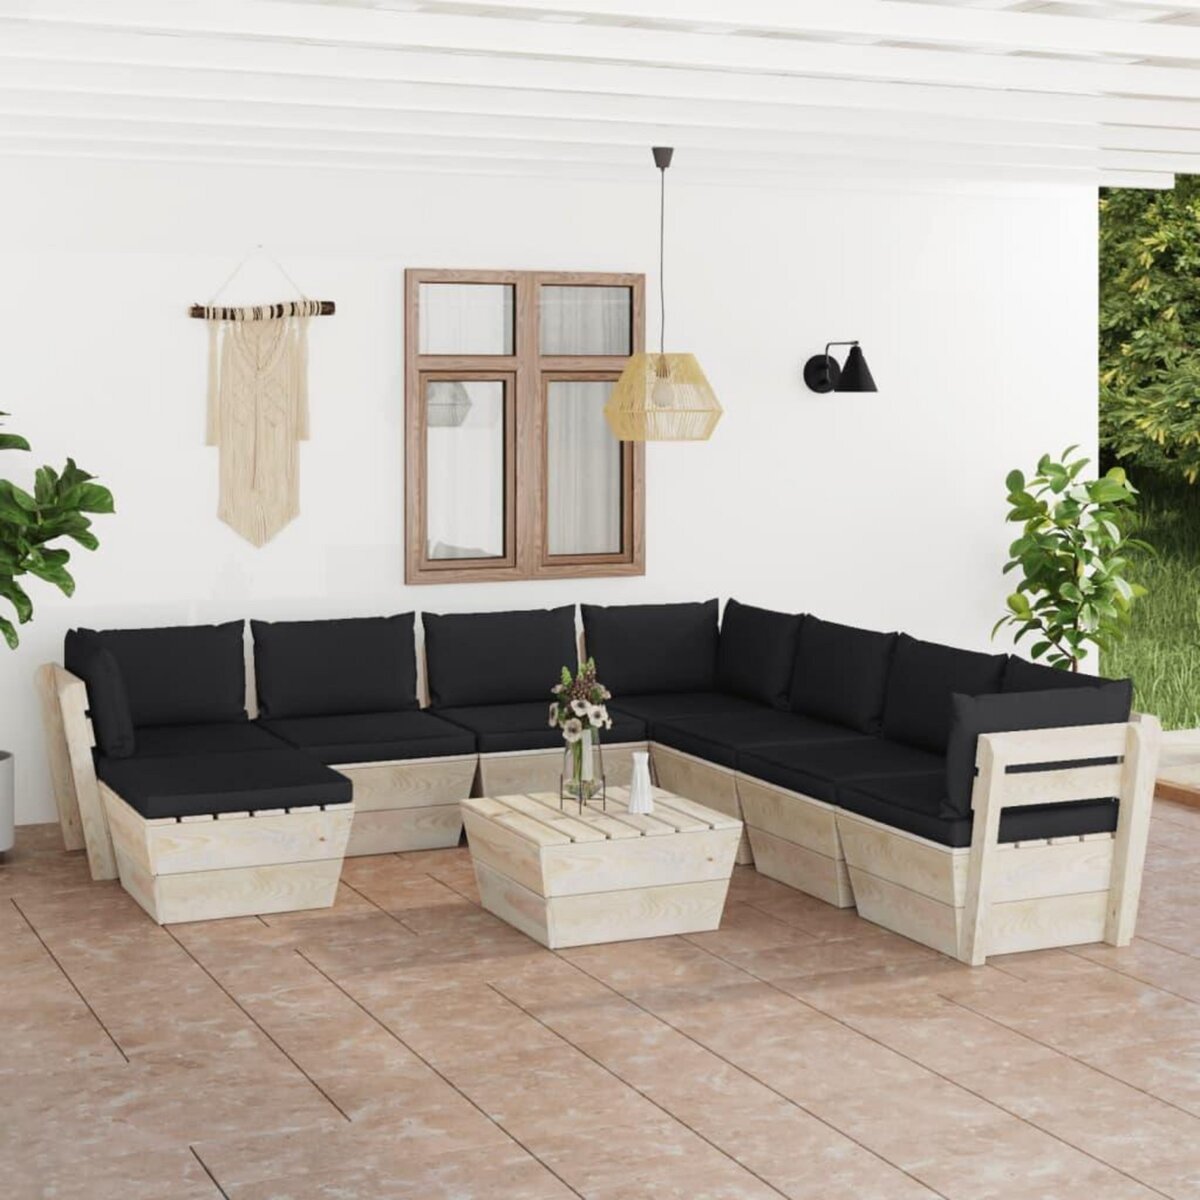 VIDAXL Salon de jardin palette 9 pcs avec coussins Epicea impregne